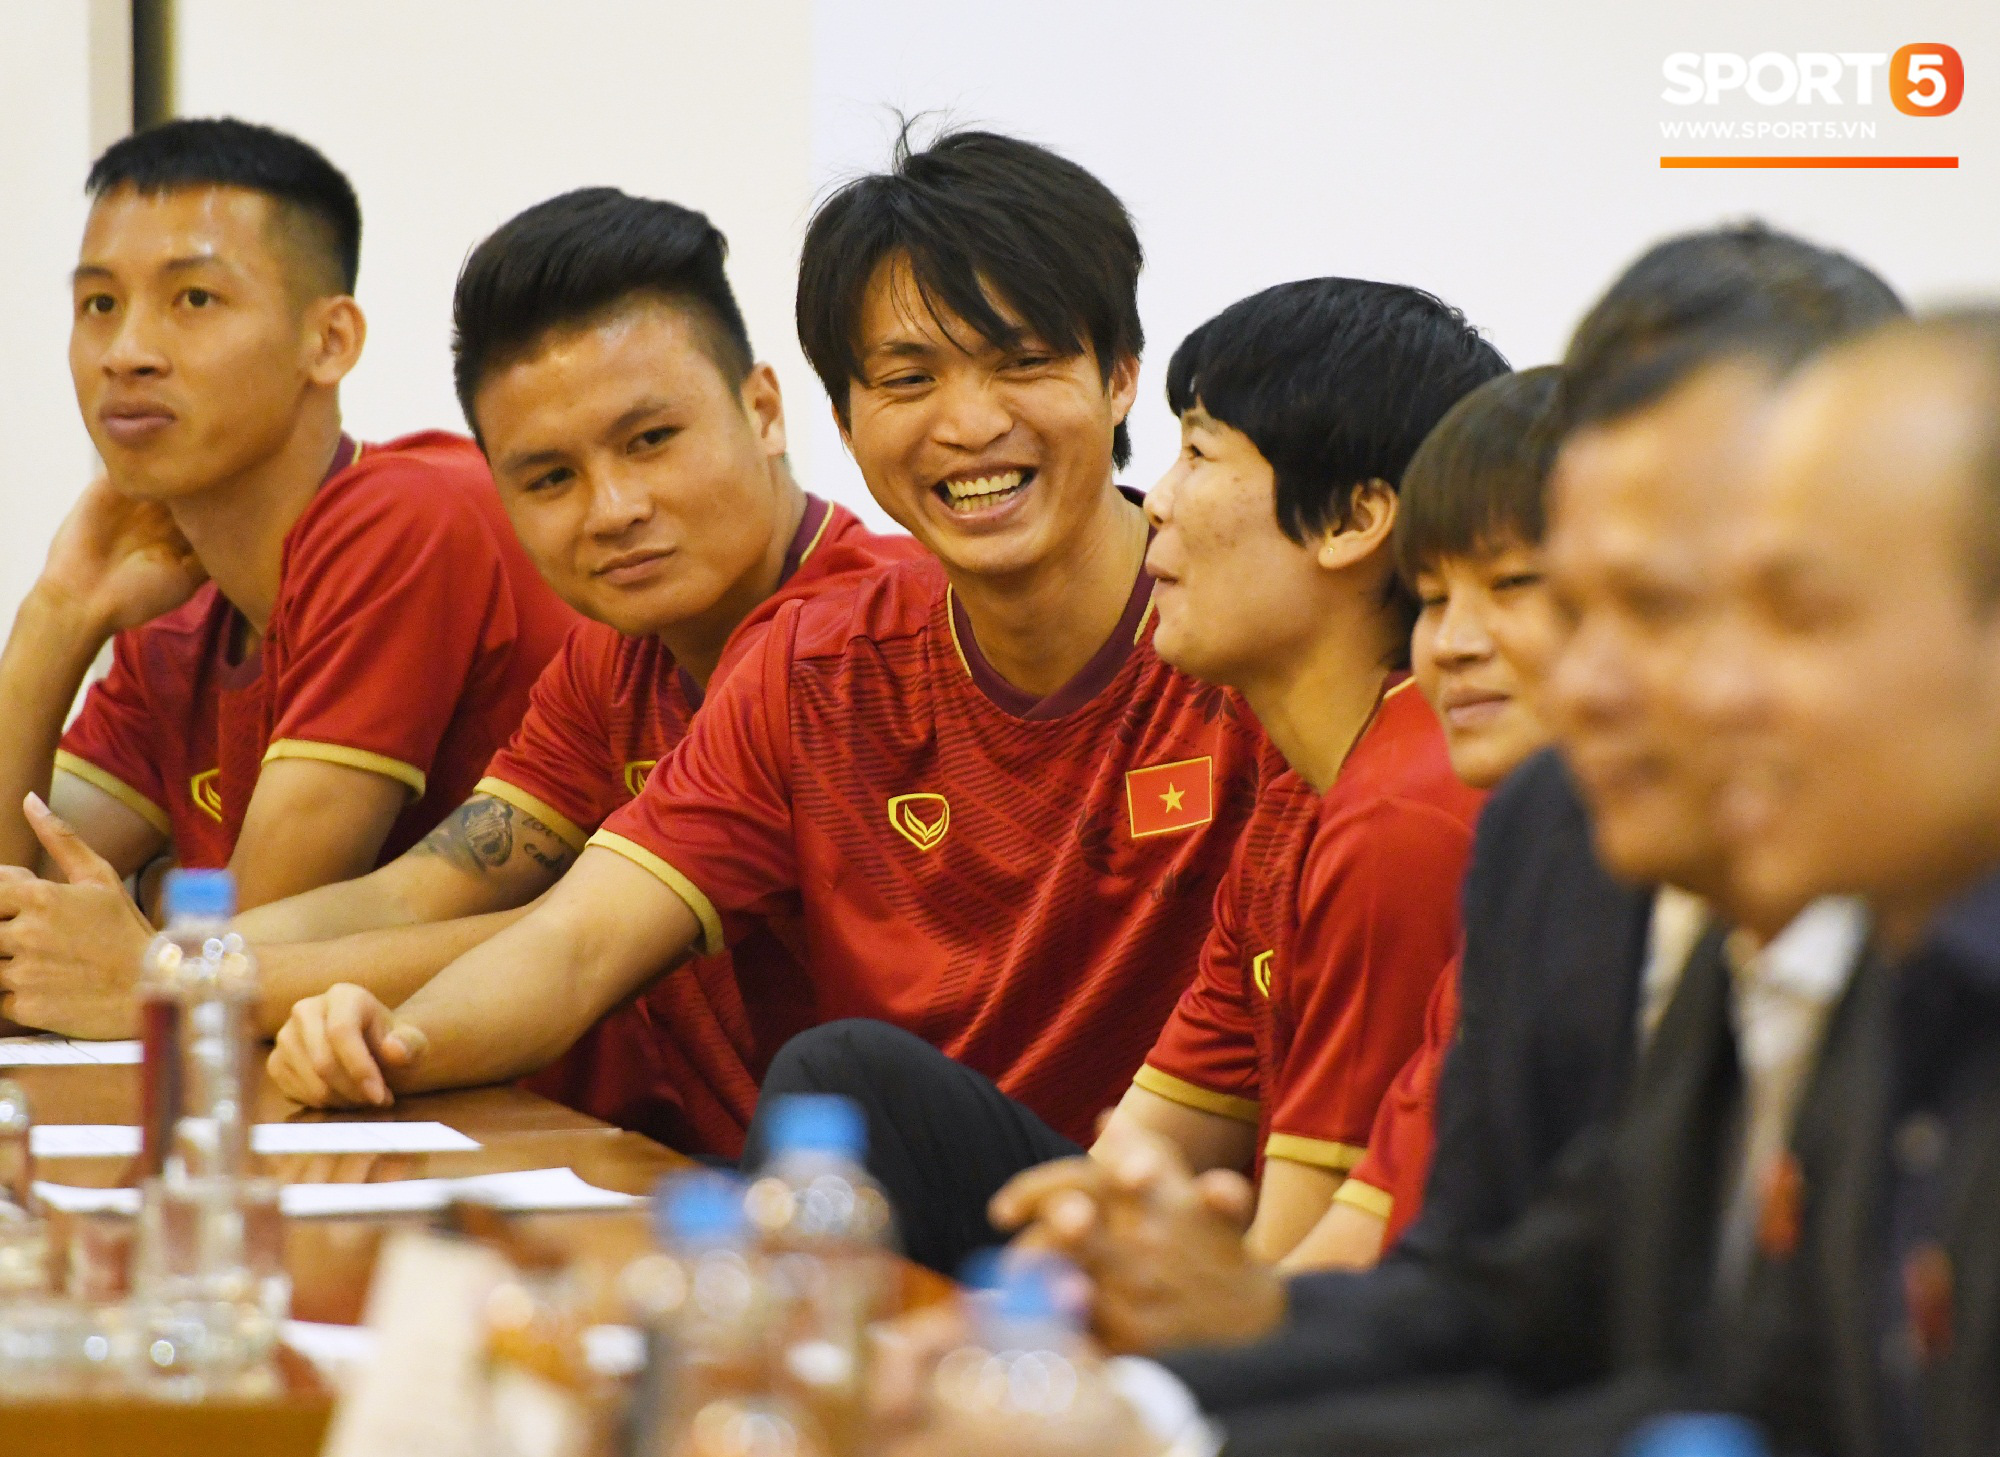 Tuấn Anh tán gẫu cực vui cùng các nữ tuyển thủ, Quang Hải gặp sự cố lạc đường hài hước trong phòng họp báo - Ảnh 2.